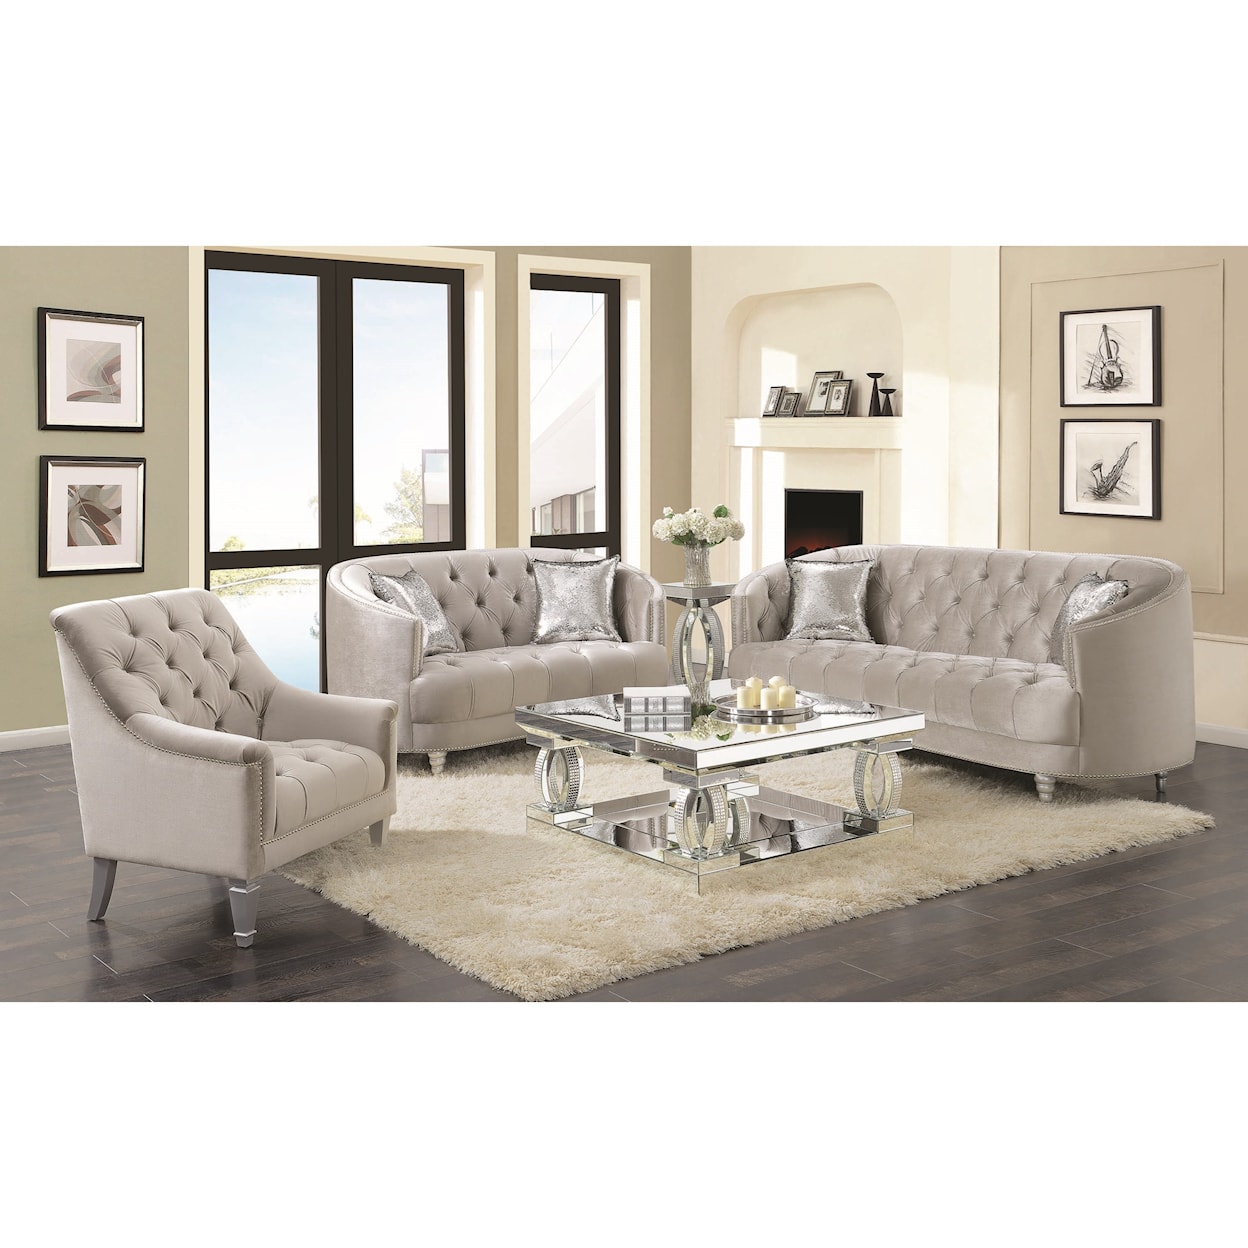 Coaster Avonlea Living Room Group